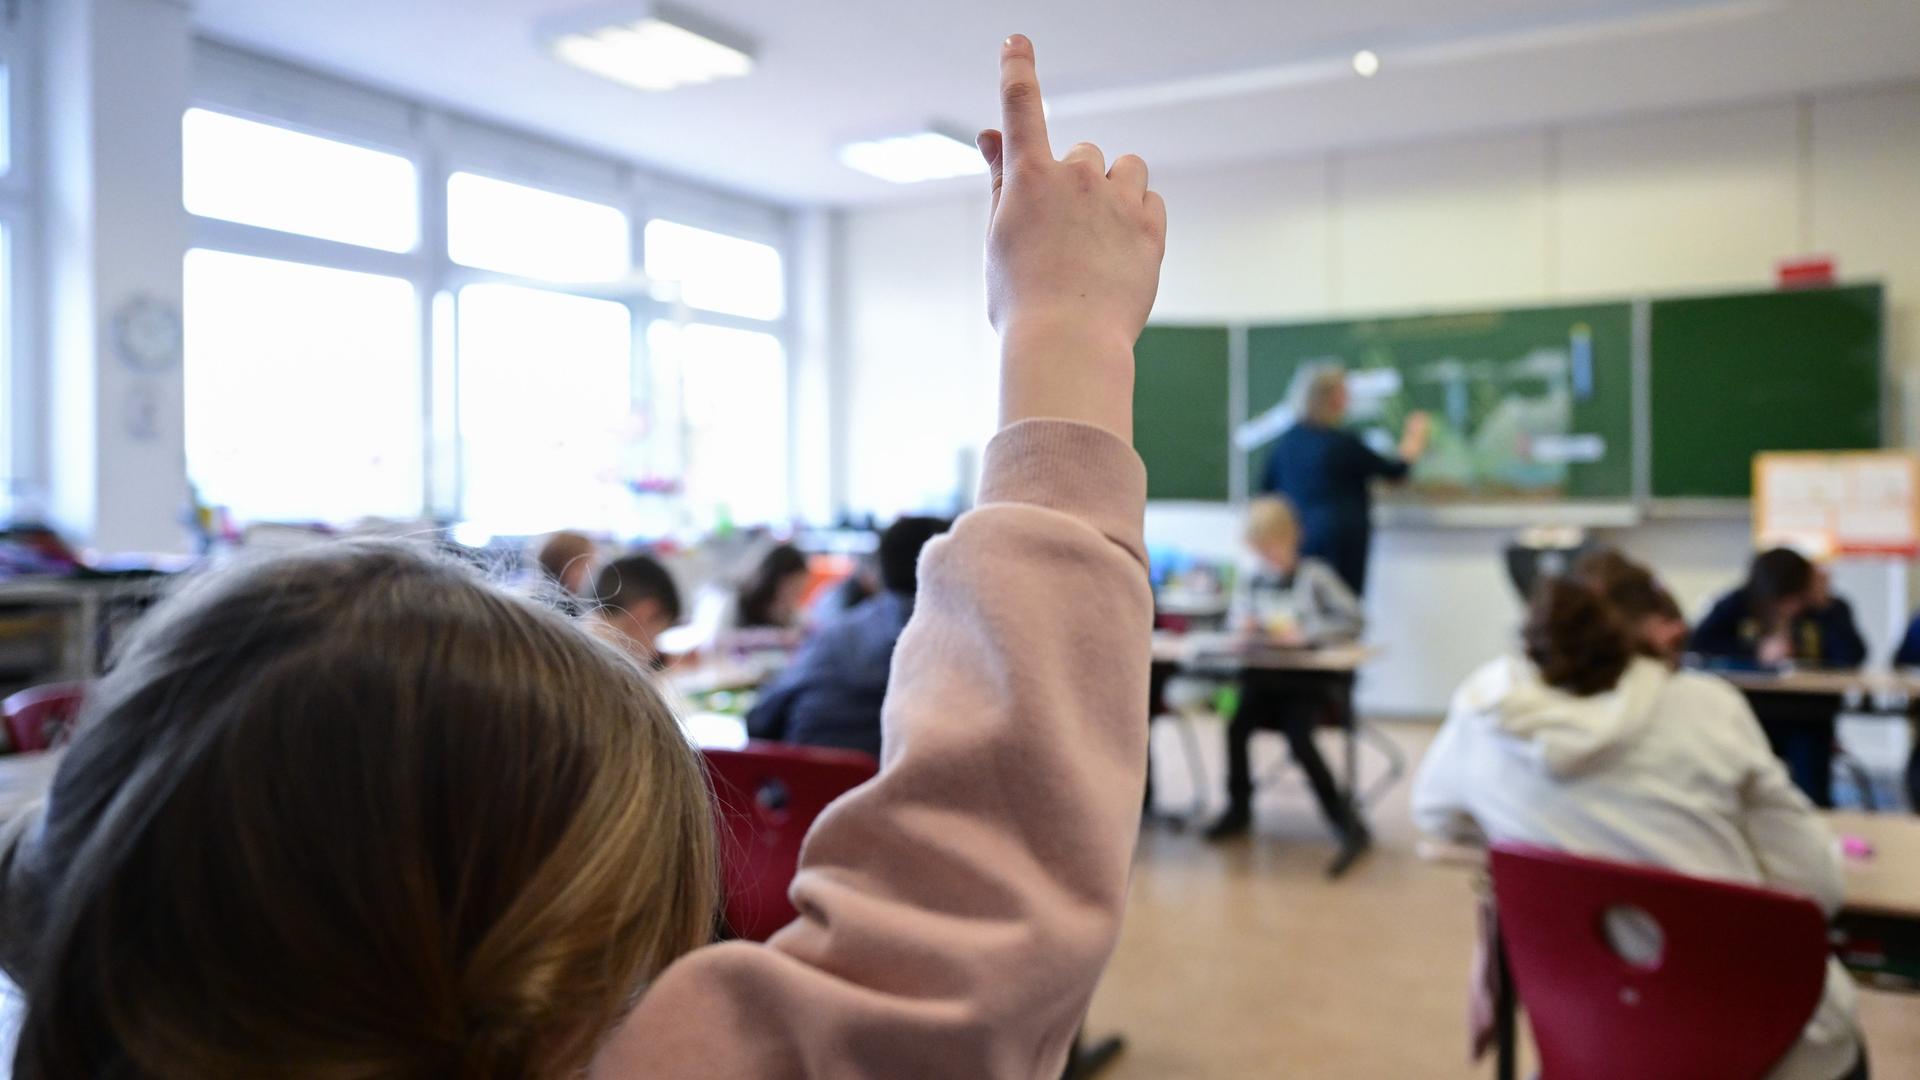 Schulkinder nehmen am Unterricht in einer Grundschule in Stuttgart teil. Ein Kind in rosafarbenem Pullover zeigt auf. Im Hintergrund des Bildes sieht man einen Lehrer an der Tafel stehen, der etwas mit Kreide notiert.